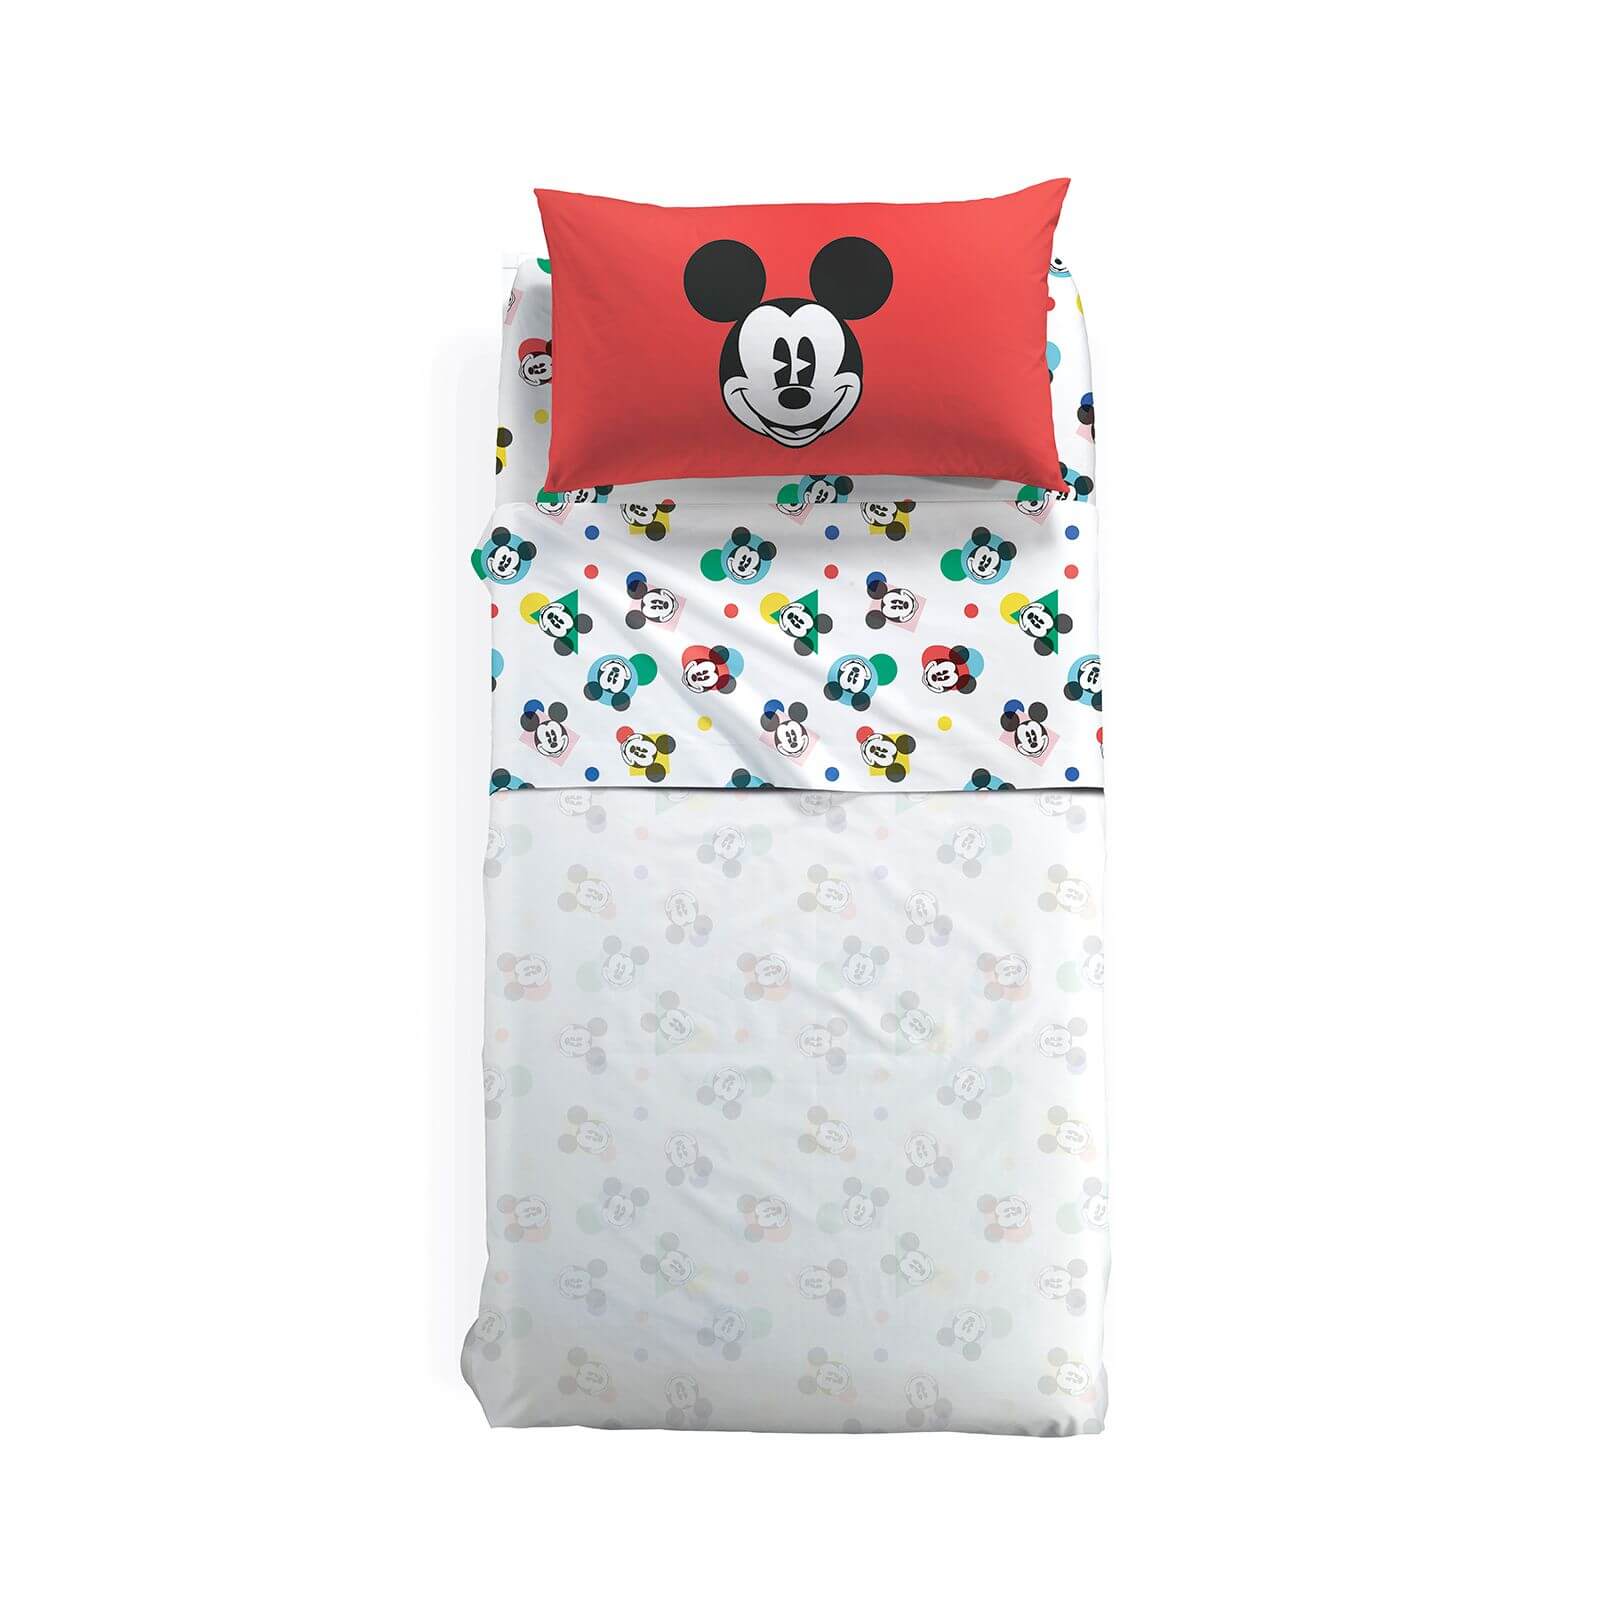 Completo lenzuola bambino Mickey Colors con Topolino in puro cotone per letto singolo. Linea Caleffi Disney. Multicolore su fondo bianco. Federa rossa con topolino.